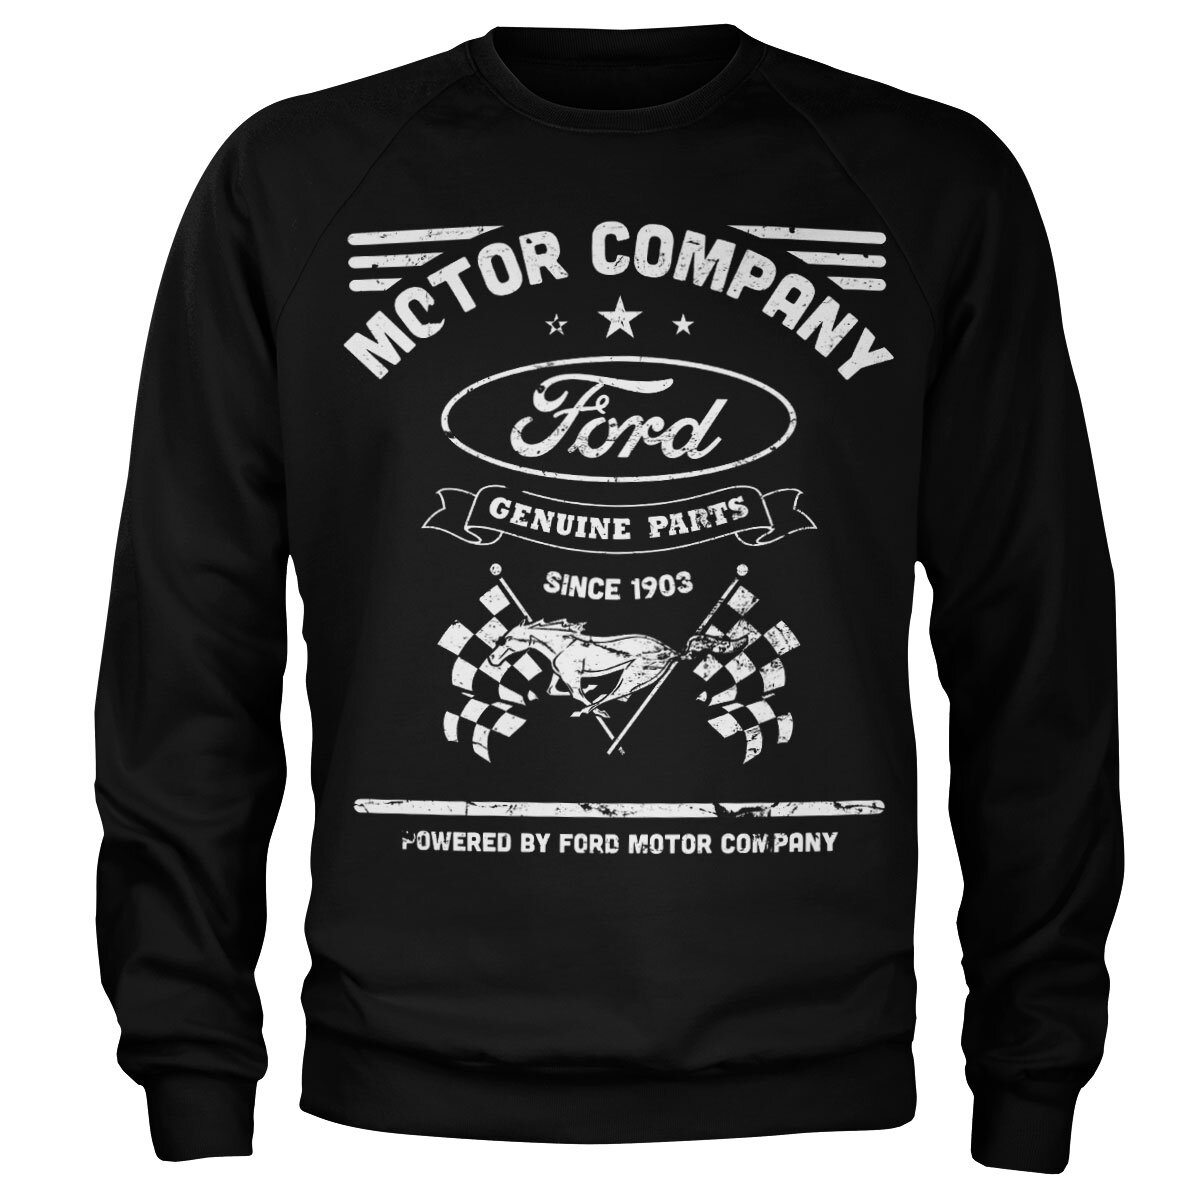 Ford - Checkers Flag Sweatshirt